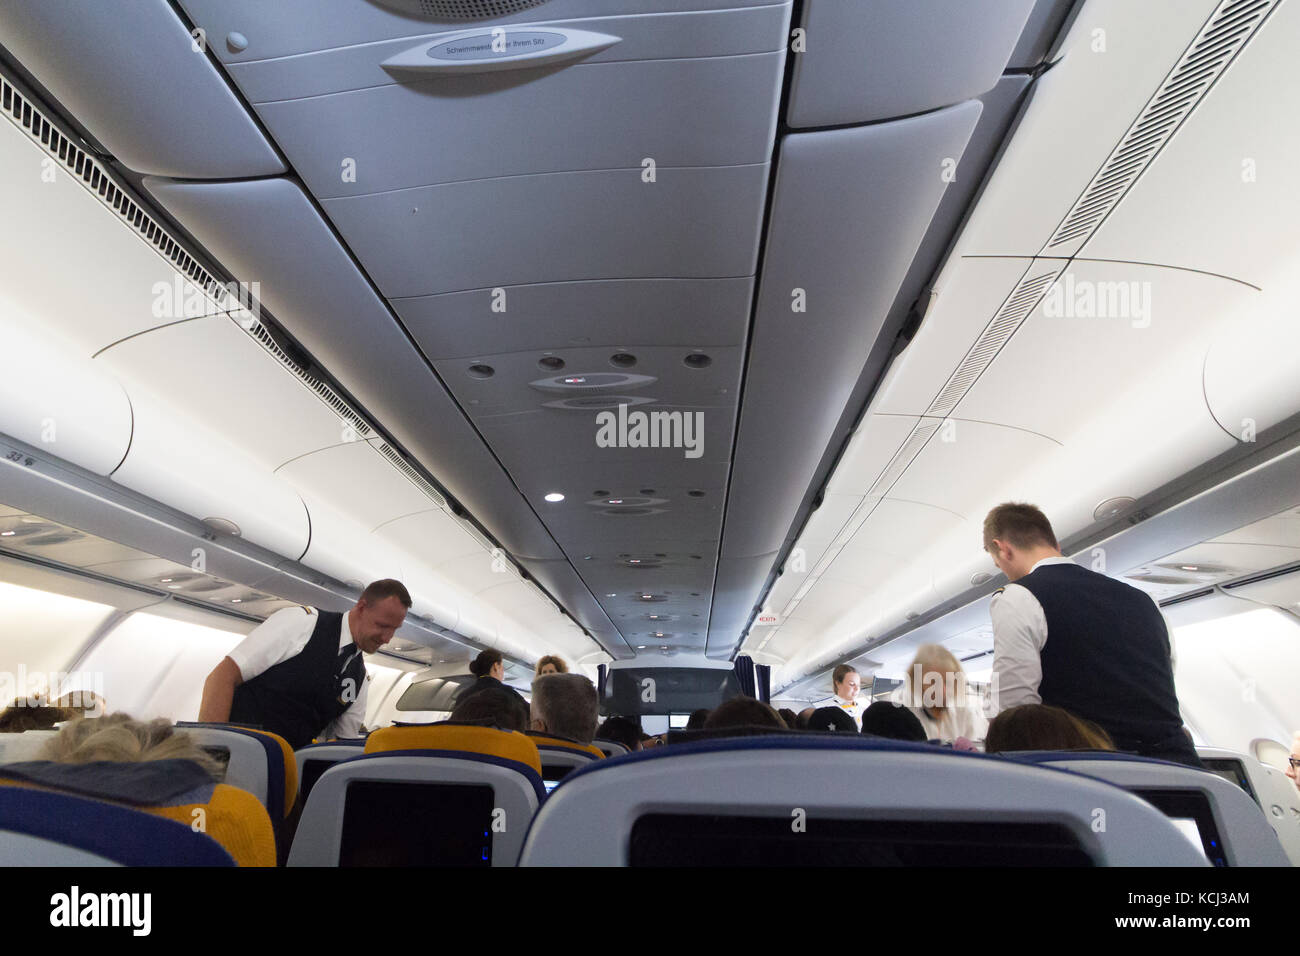 München, Deutschland - September 21th, 2017: Cabin Crew ist die Kontrolle über die Sicherheitsgurte vor Weg nehmen, Economy Class Lufthansa Airlines. Stockfoto